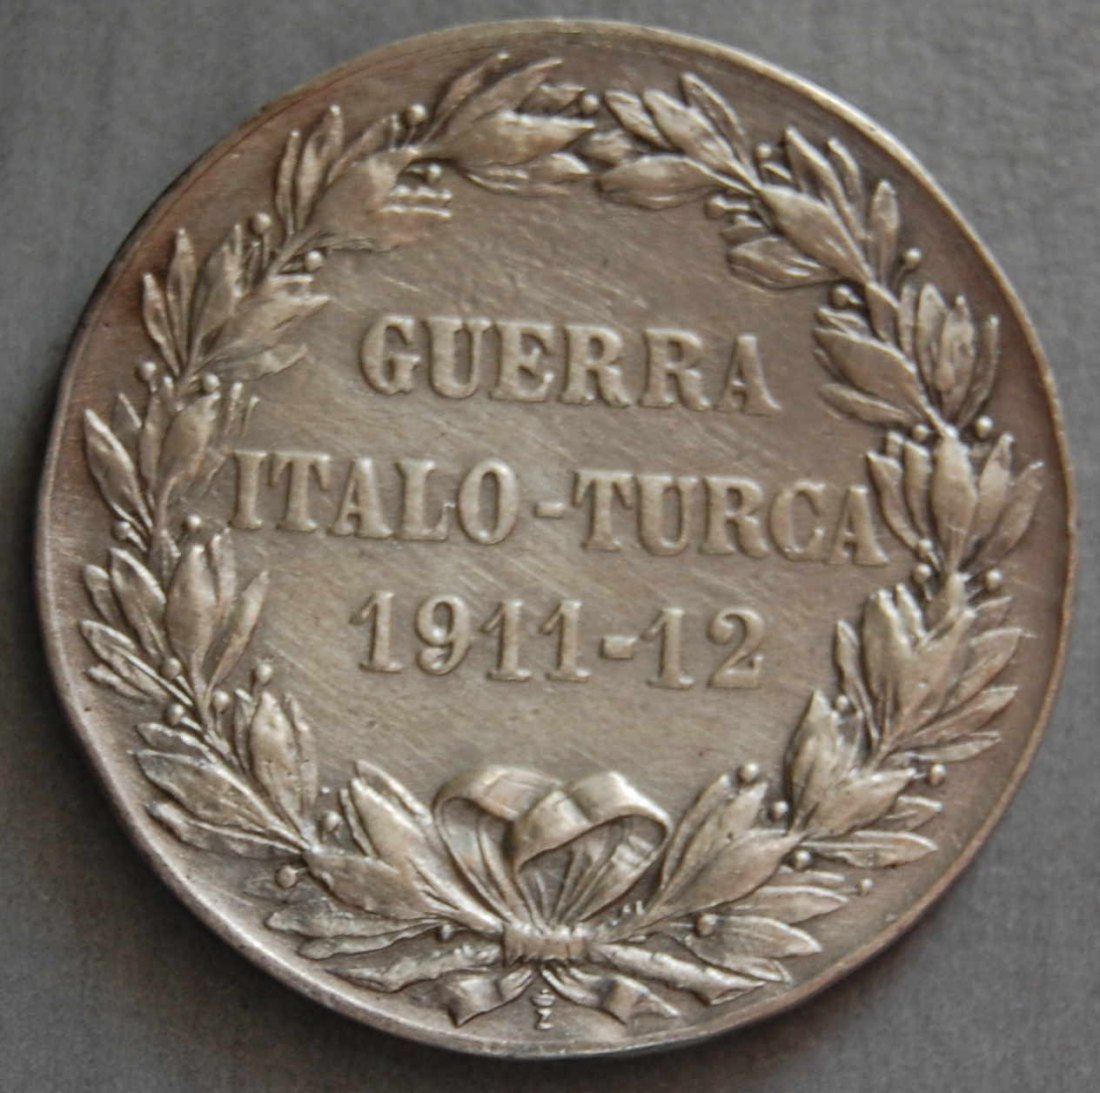  GUERRA ITALO TURCA 1911 - 12 DECORAZIONE ARGENTO VITTORIO EMANUELE III   